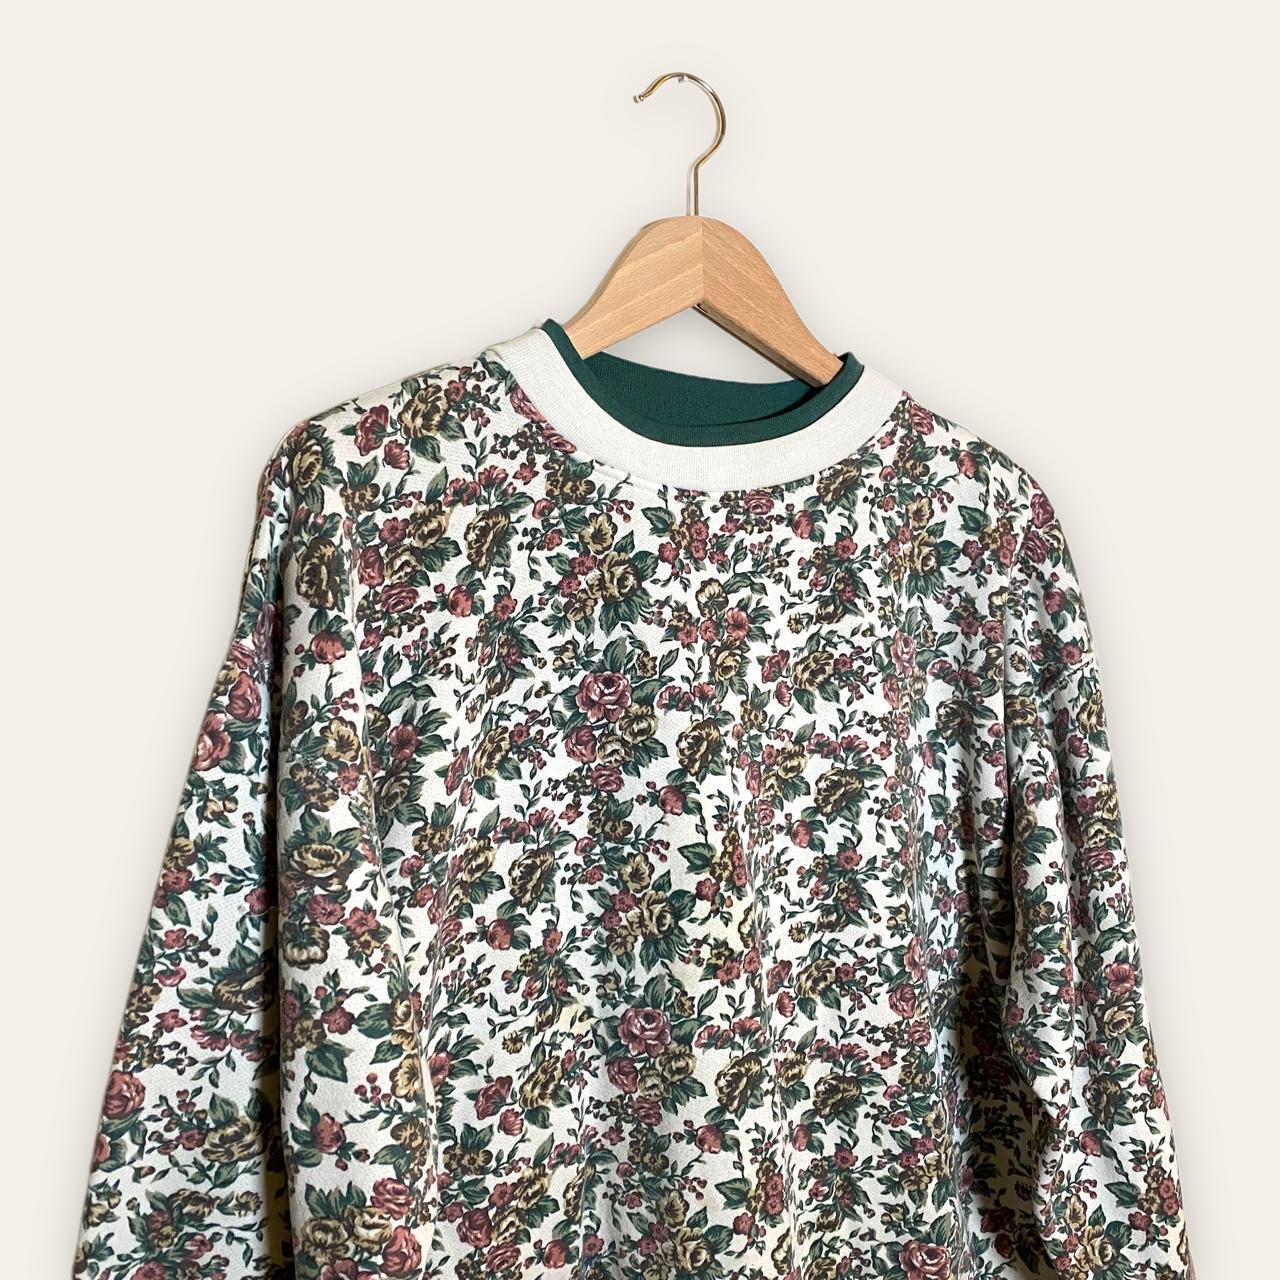 Product Image 2 - vintage floral sweatshirt crewneck grandma